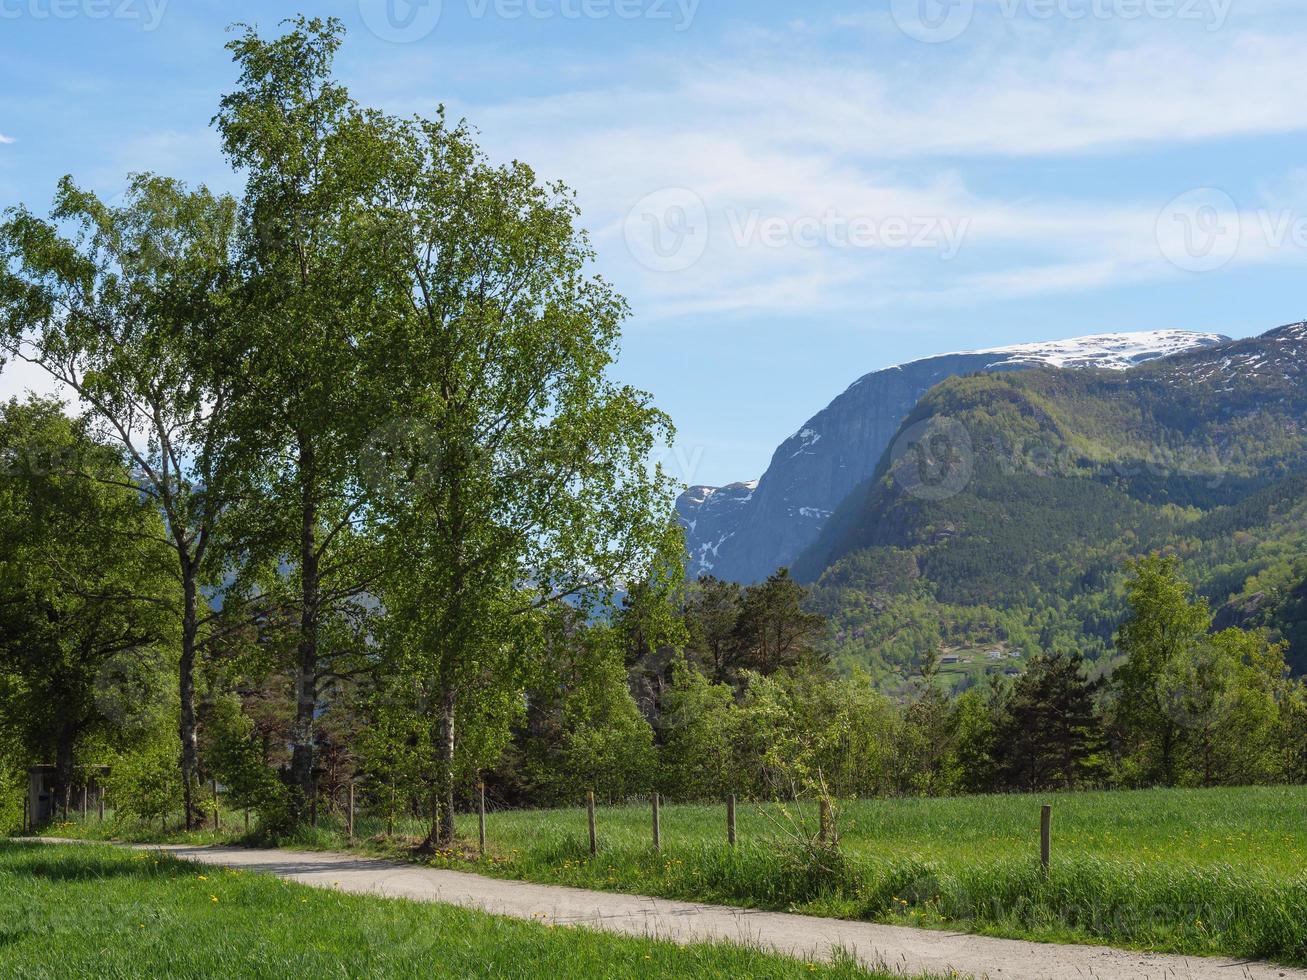 le petit village eidfjord dans le hardangerfjord norvégien photo